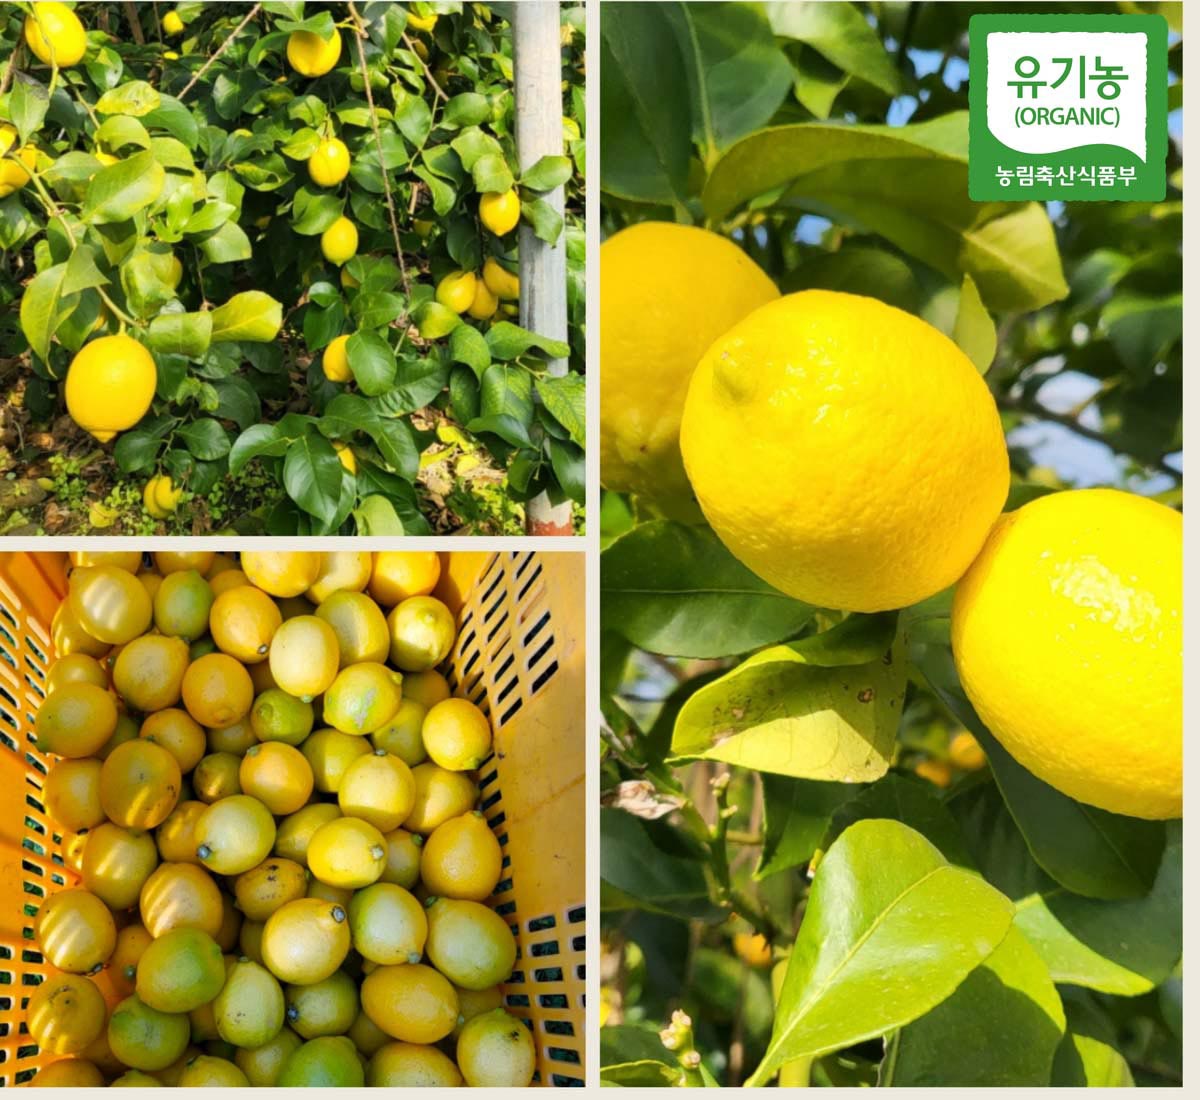 국산 무농약 레몬이 잘 여물어서 가지에 달려있는 모습